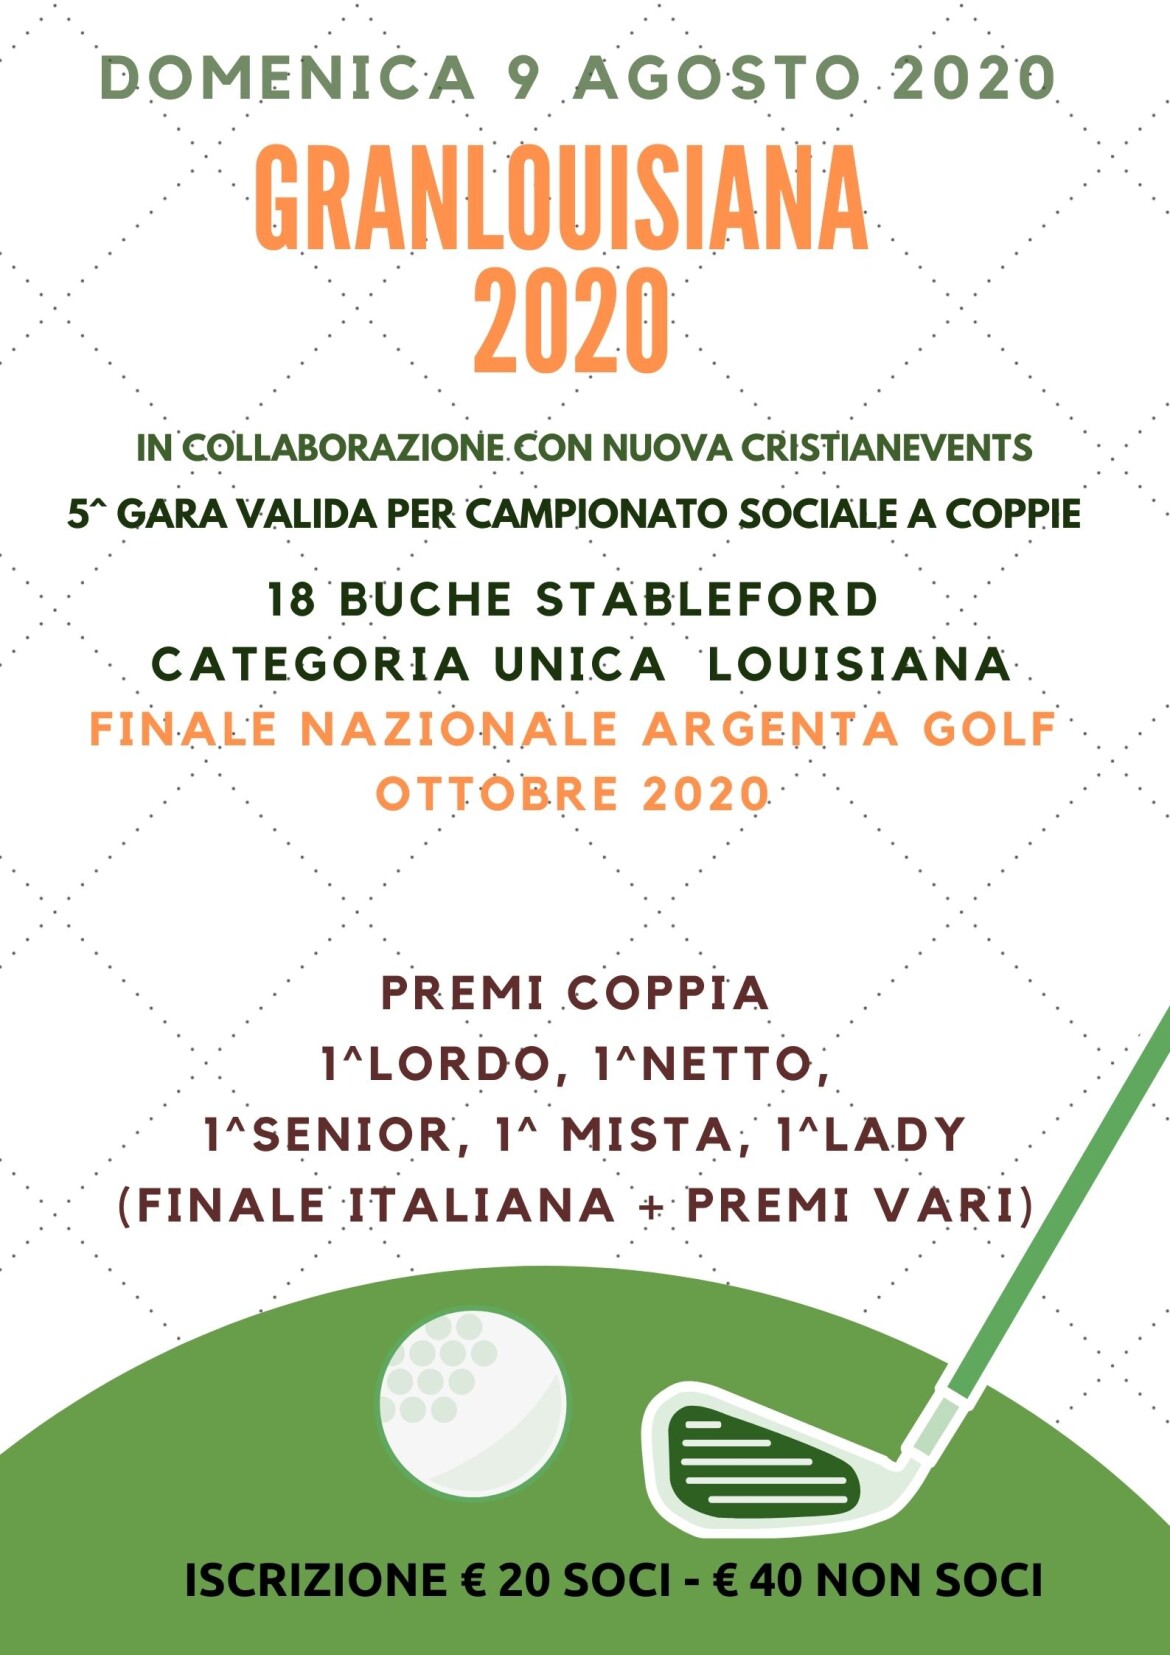 Granlouisiana 2020 by nuova Cristianevents